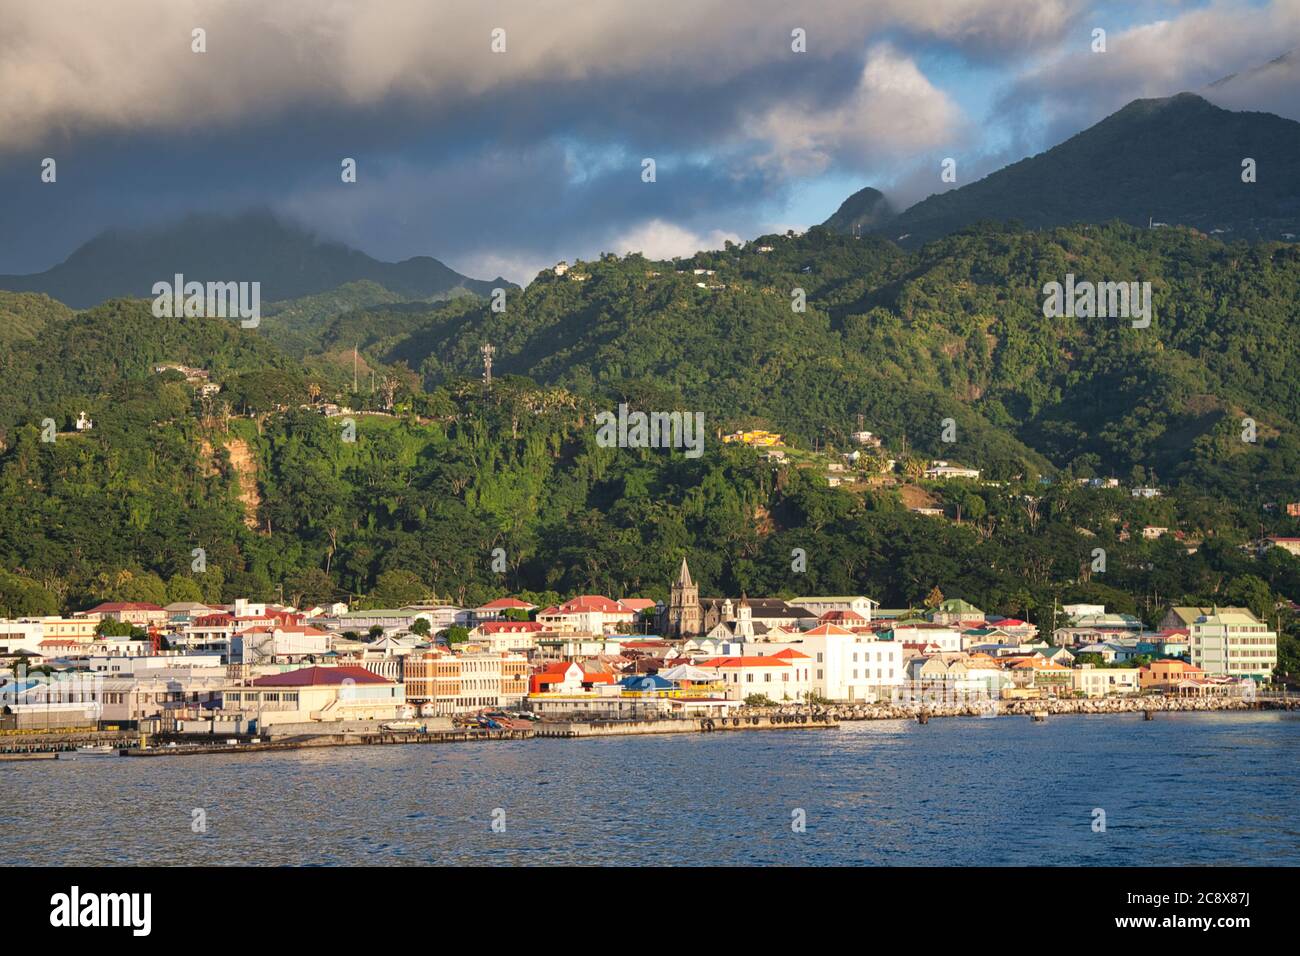 Die Stadt Roseau auf Dominica Insel vom Meer aus gesehen mit einer Landschaft von bewaldeten Hügeln darüber und Wolken in einem blauen Himmel über, die Karibik Stockfoto